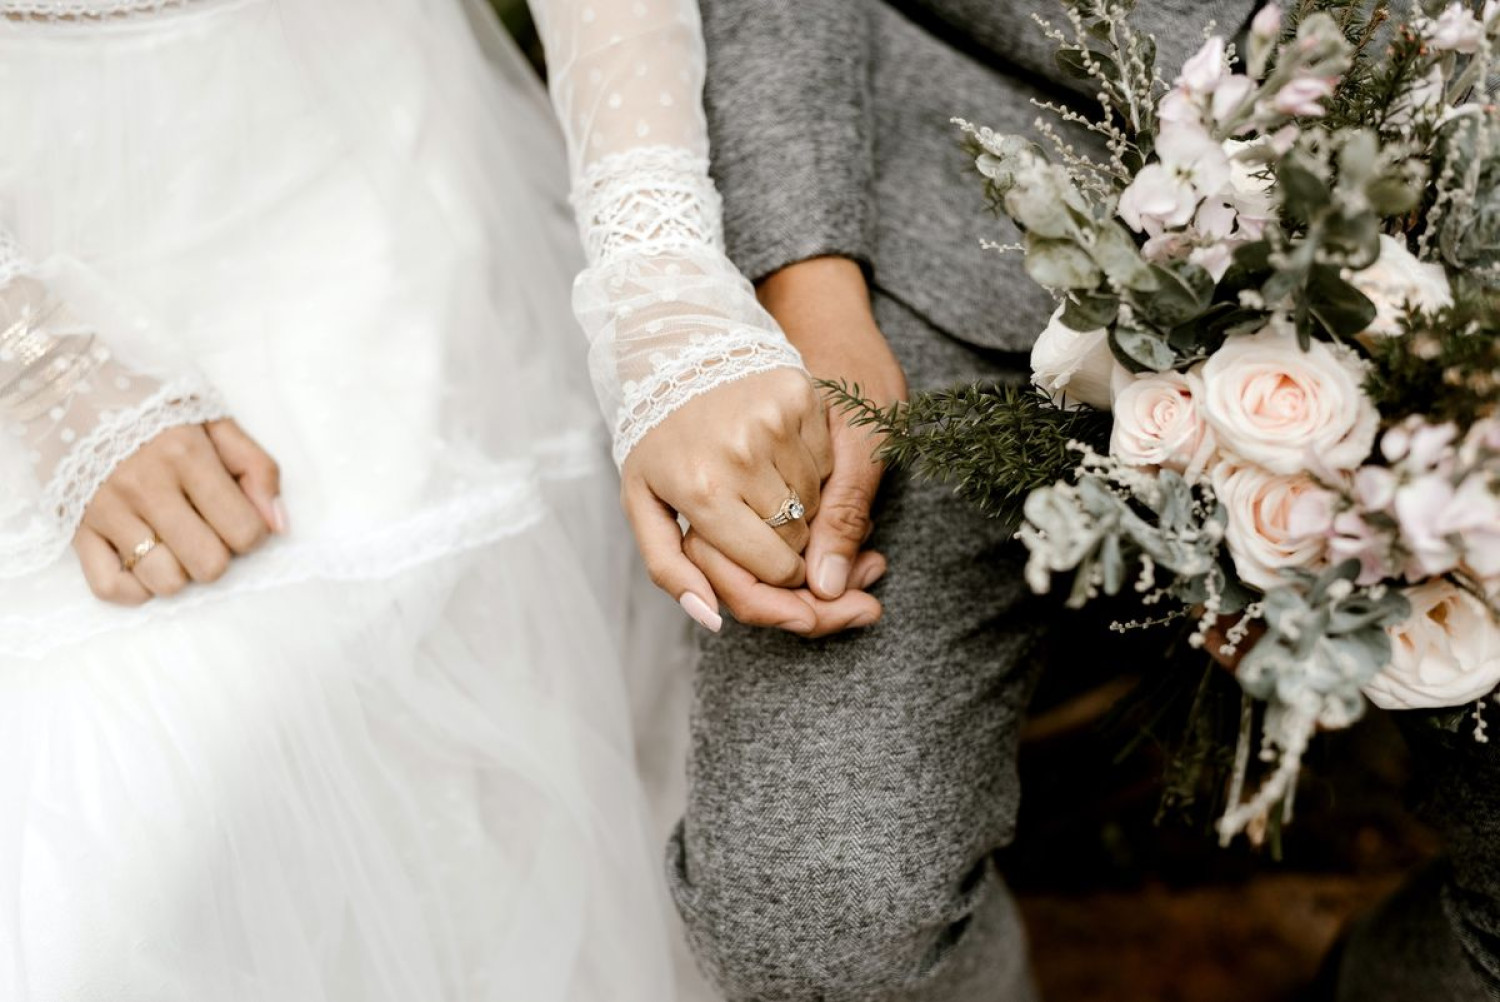 7 nőt vett feleségül a férfi egy nagyszabású esküvői szertartáson, 40 limuzinnal szállította a vendégeket a fogadásra